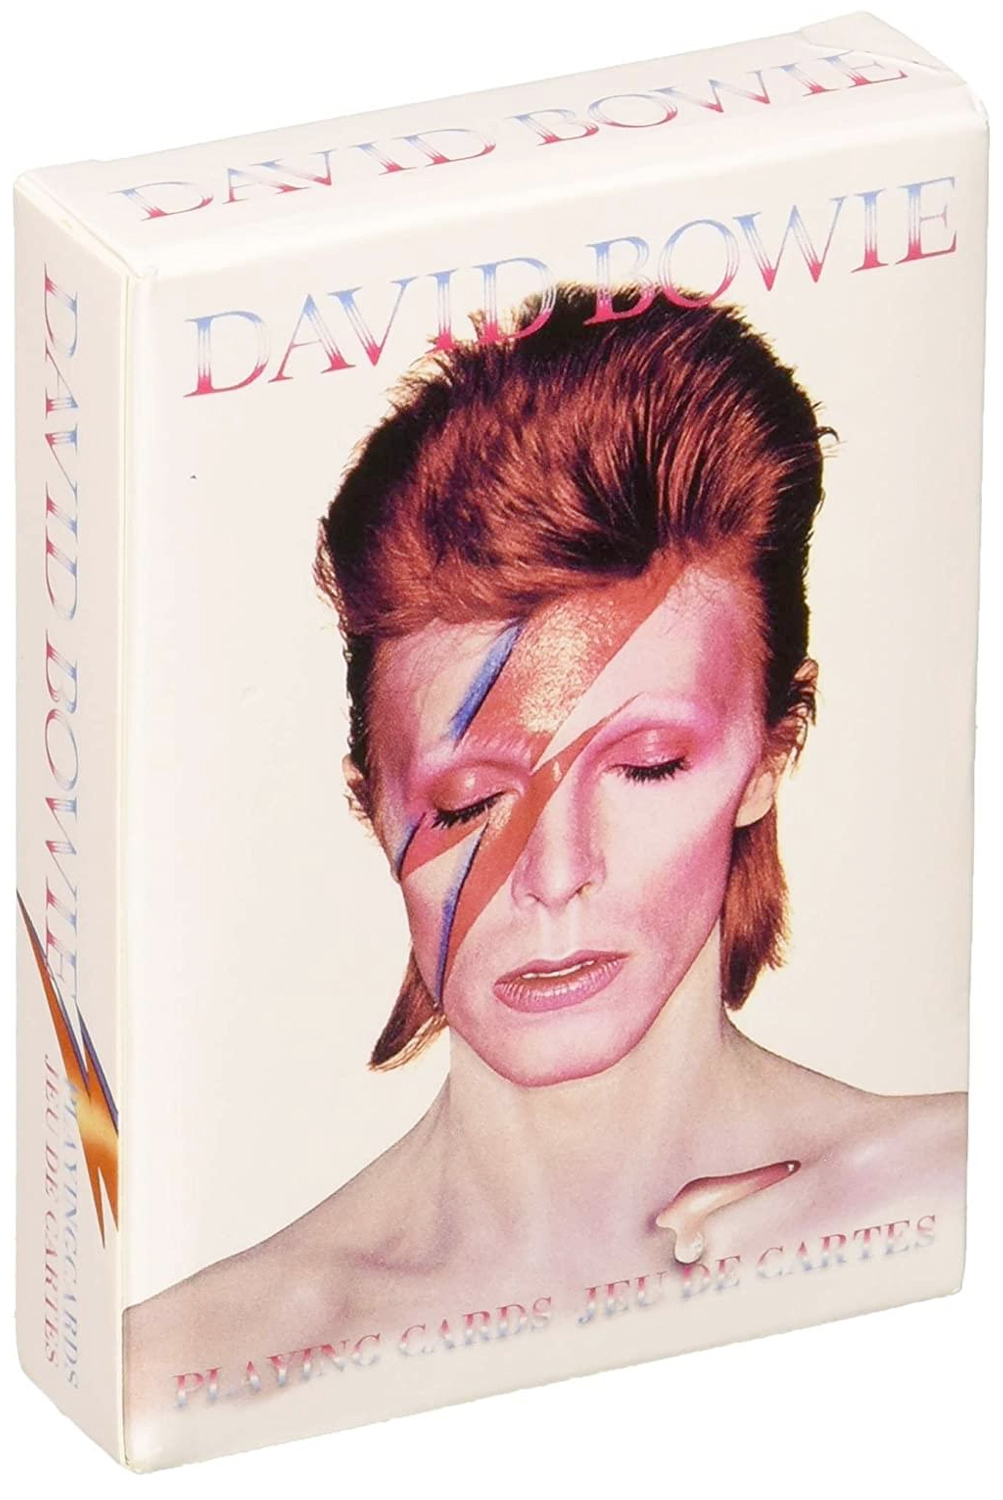 Baralho David Bowie o Camaleão do Rock